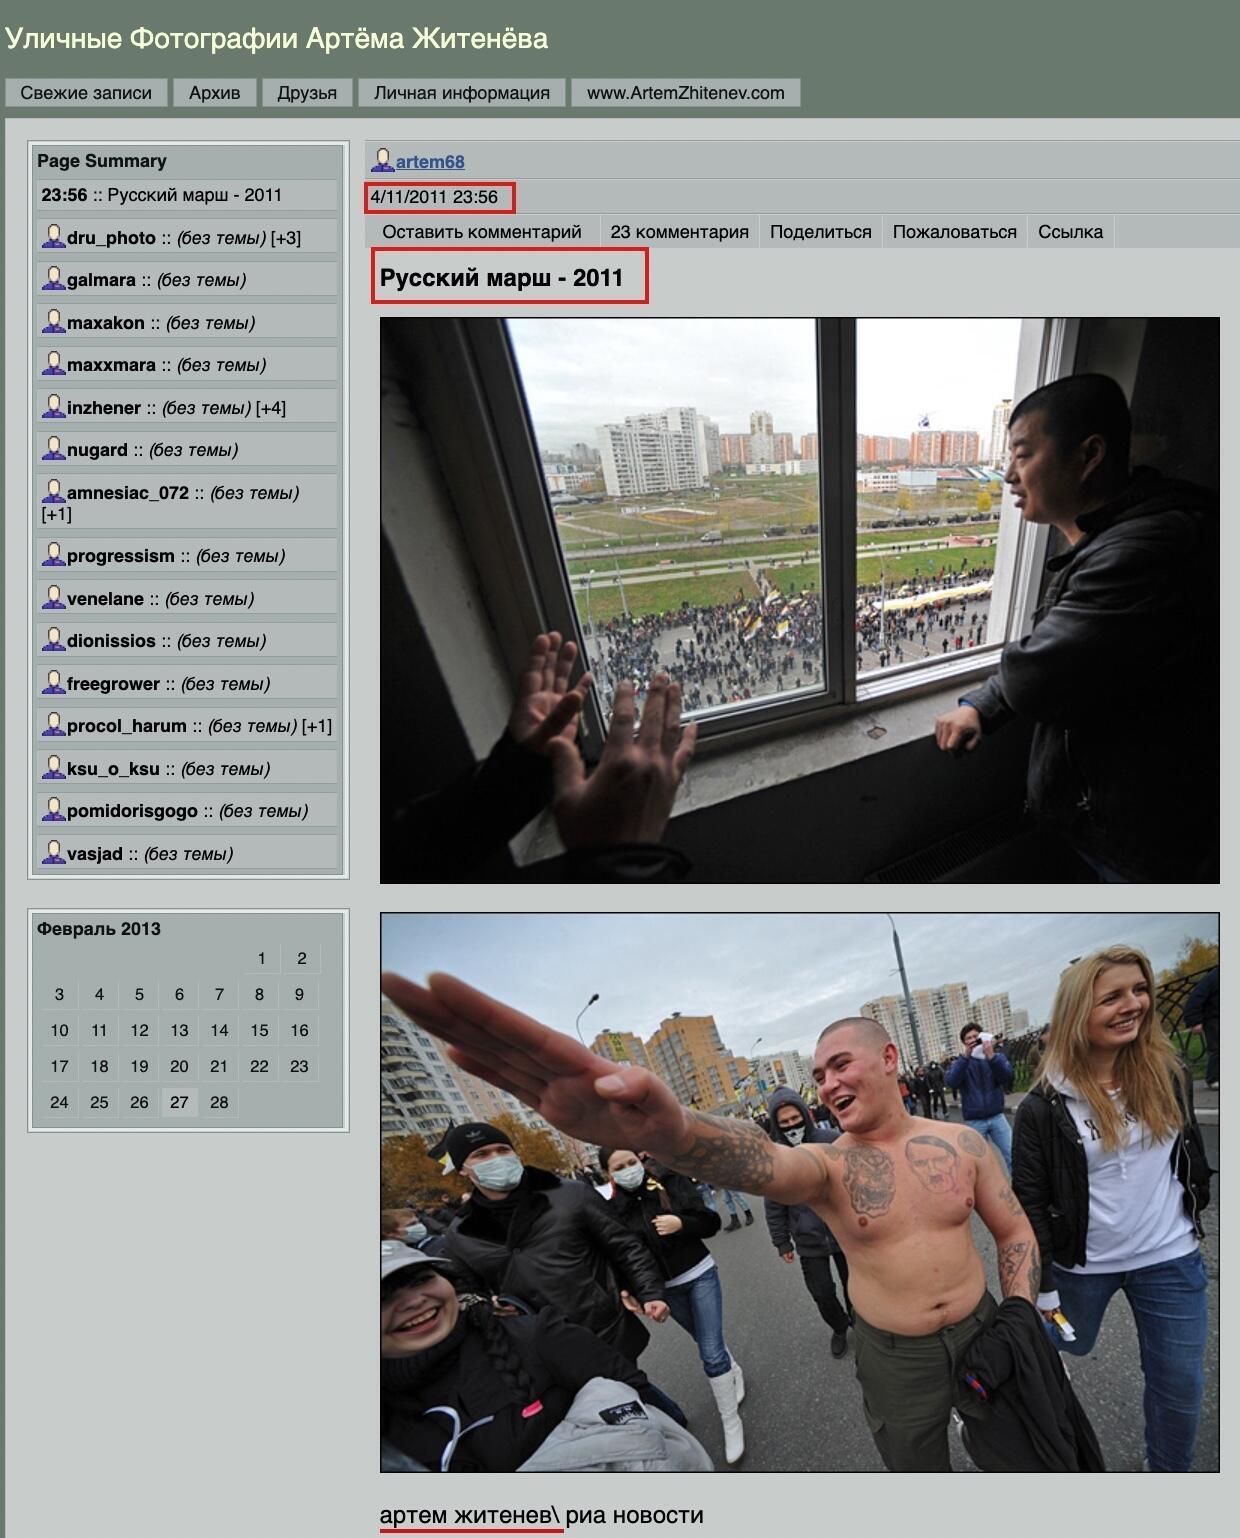 Dies ist ein Screenshot aus einem russischen Forum, in dem ein Mann sagt, dass er dieses Foto im November 2011 gemacht hat.